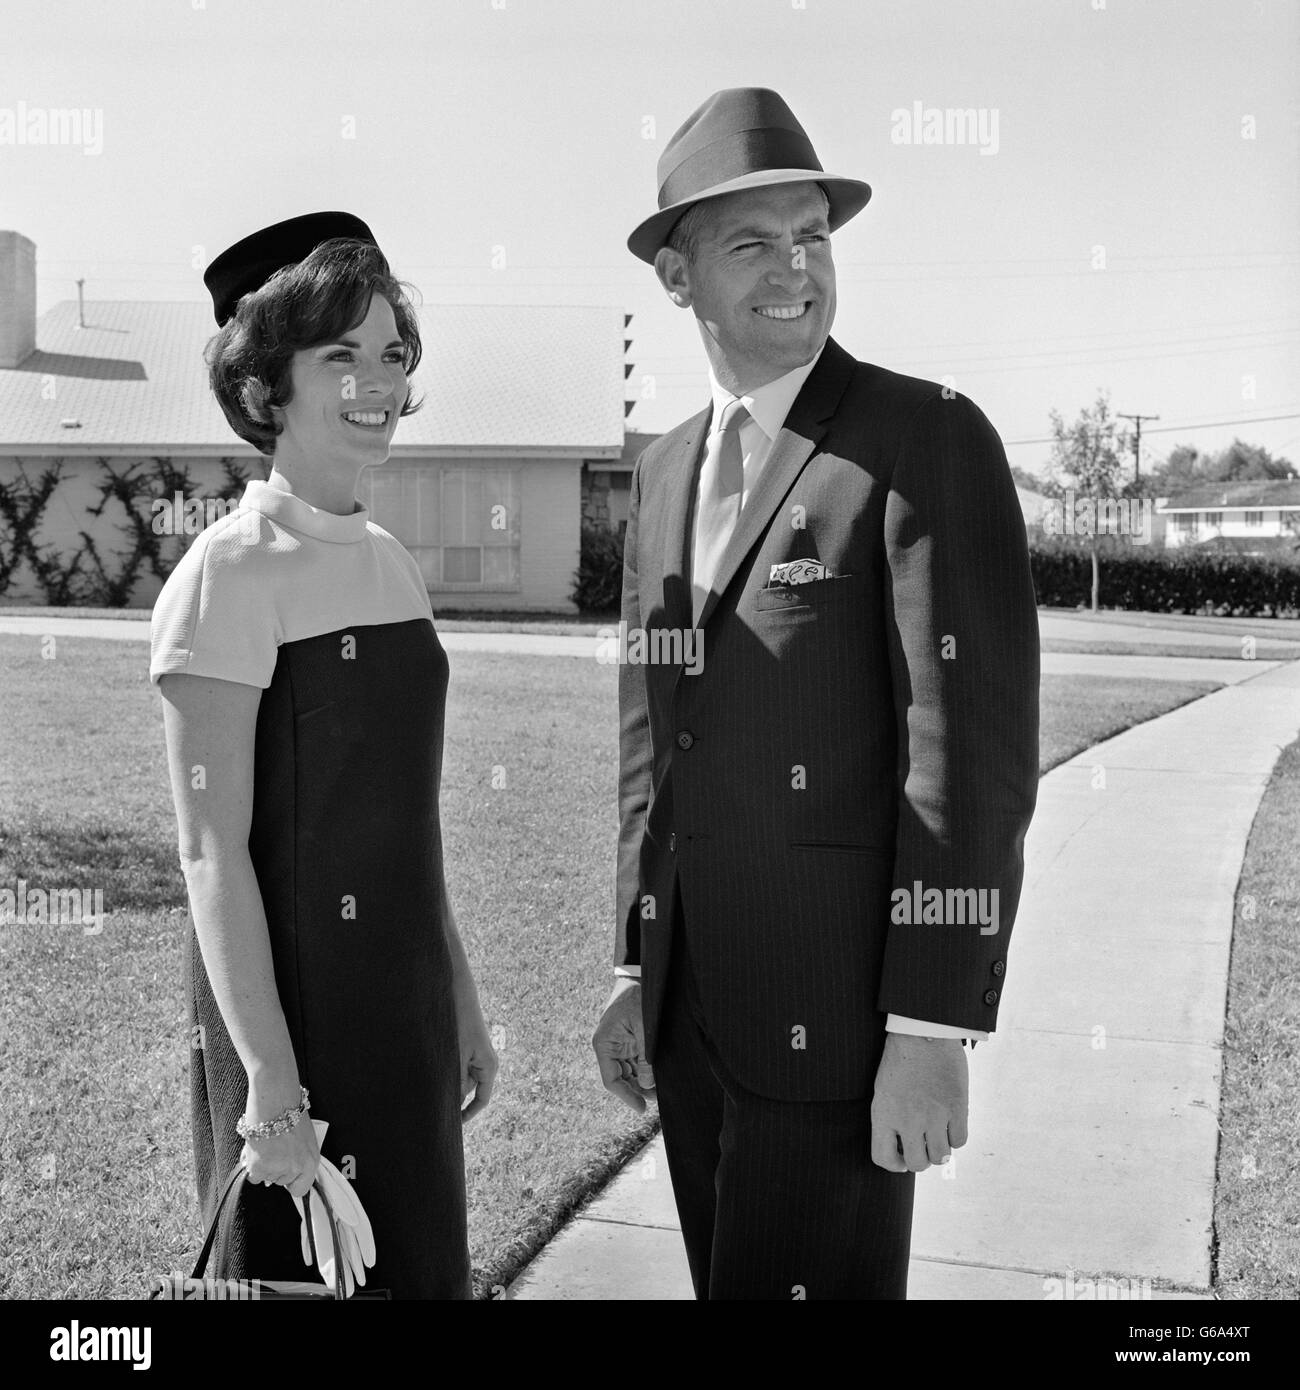 1960 SMILING COUPLE WEARING ROBE VÊTEMENTS DEBOUT SUR UN TROTTOIR DU QUARTIER Banque D'Images